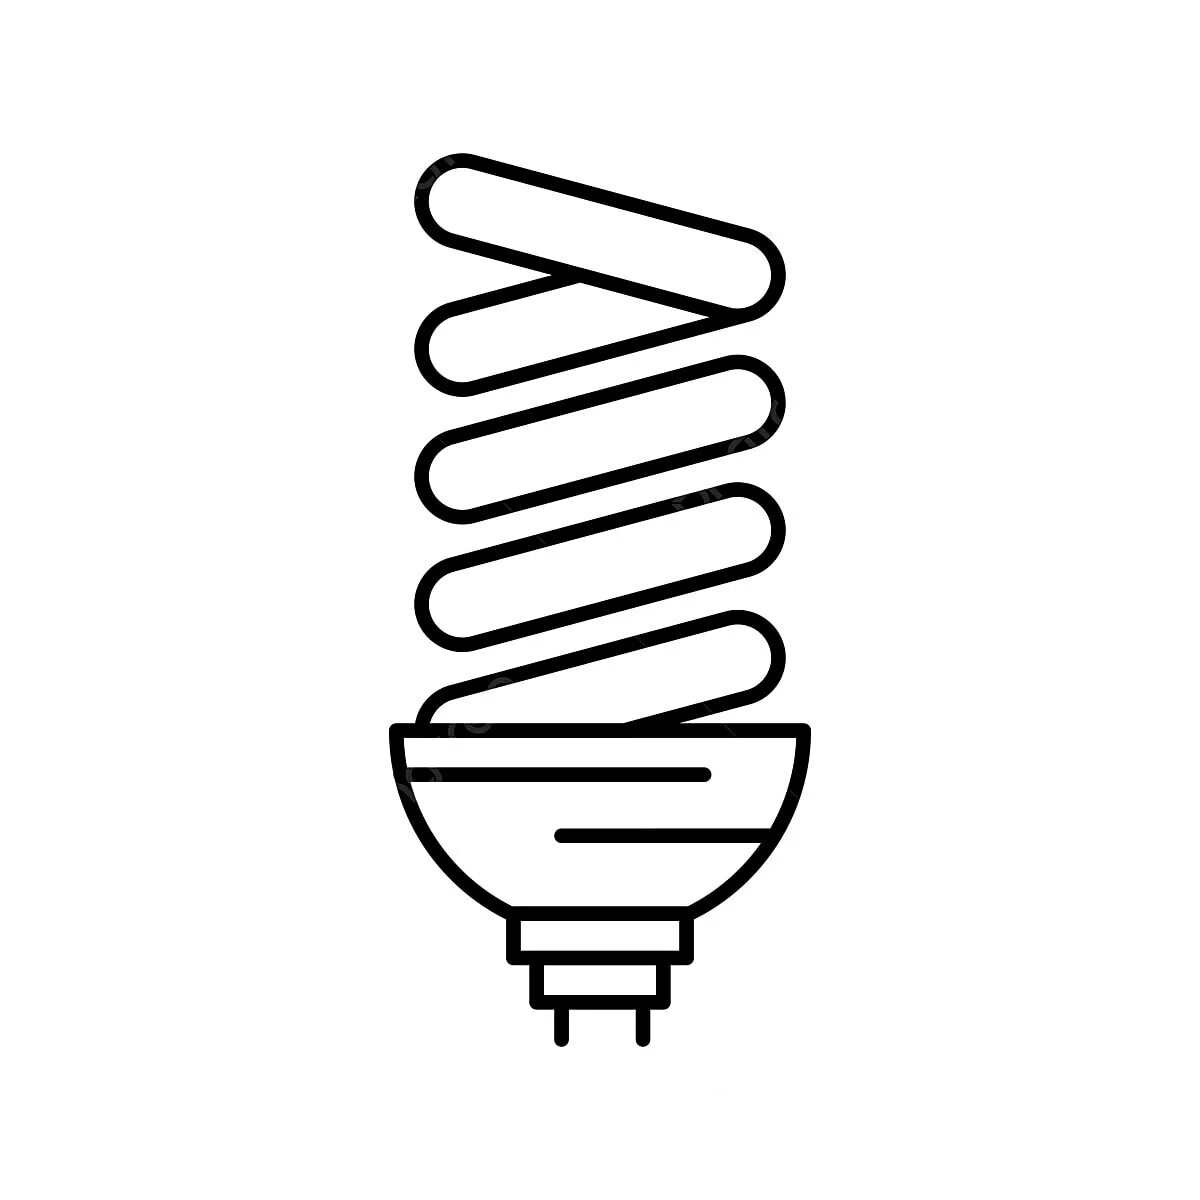 Энергосберегающая лампа рисунок. Лампа энергосберегающая вектор. Пиктограммы для энергосберегающих ламп. Энергосберегающая лампа иконка. Энергосберегающая лампочка вектор.